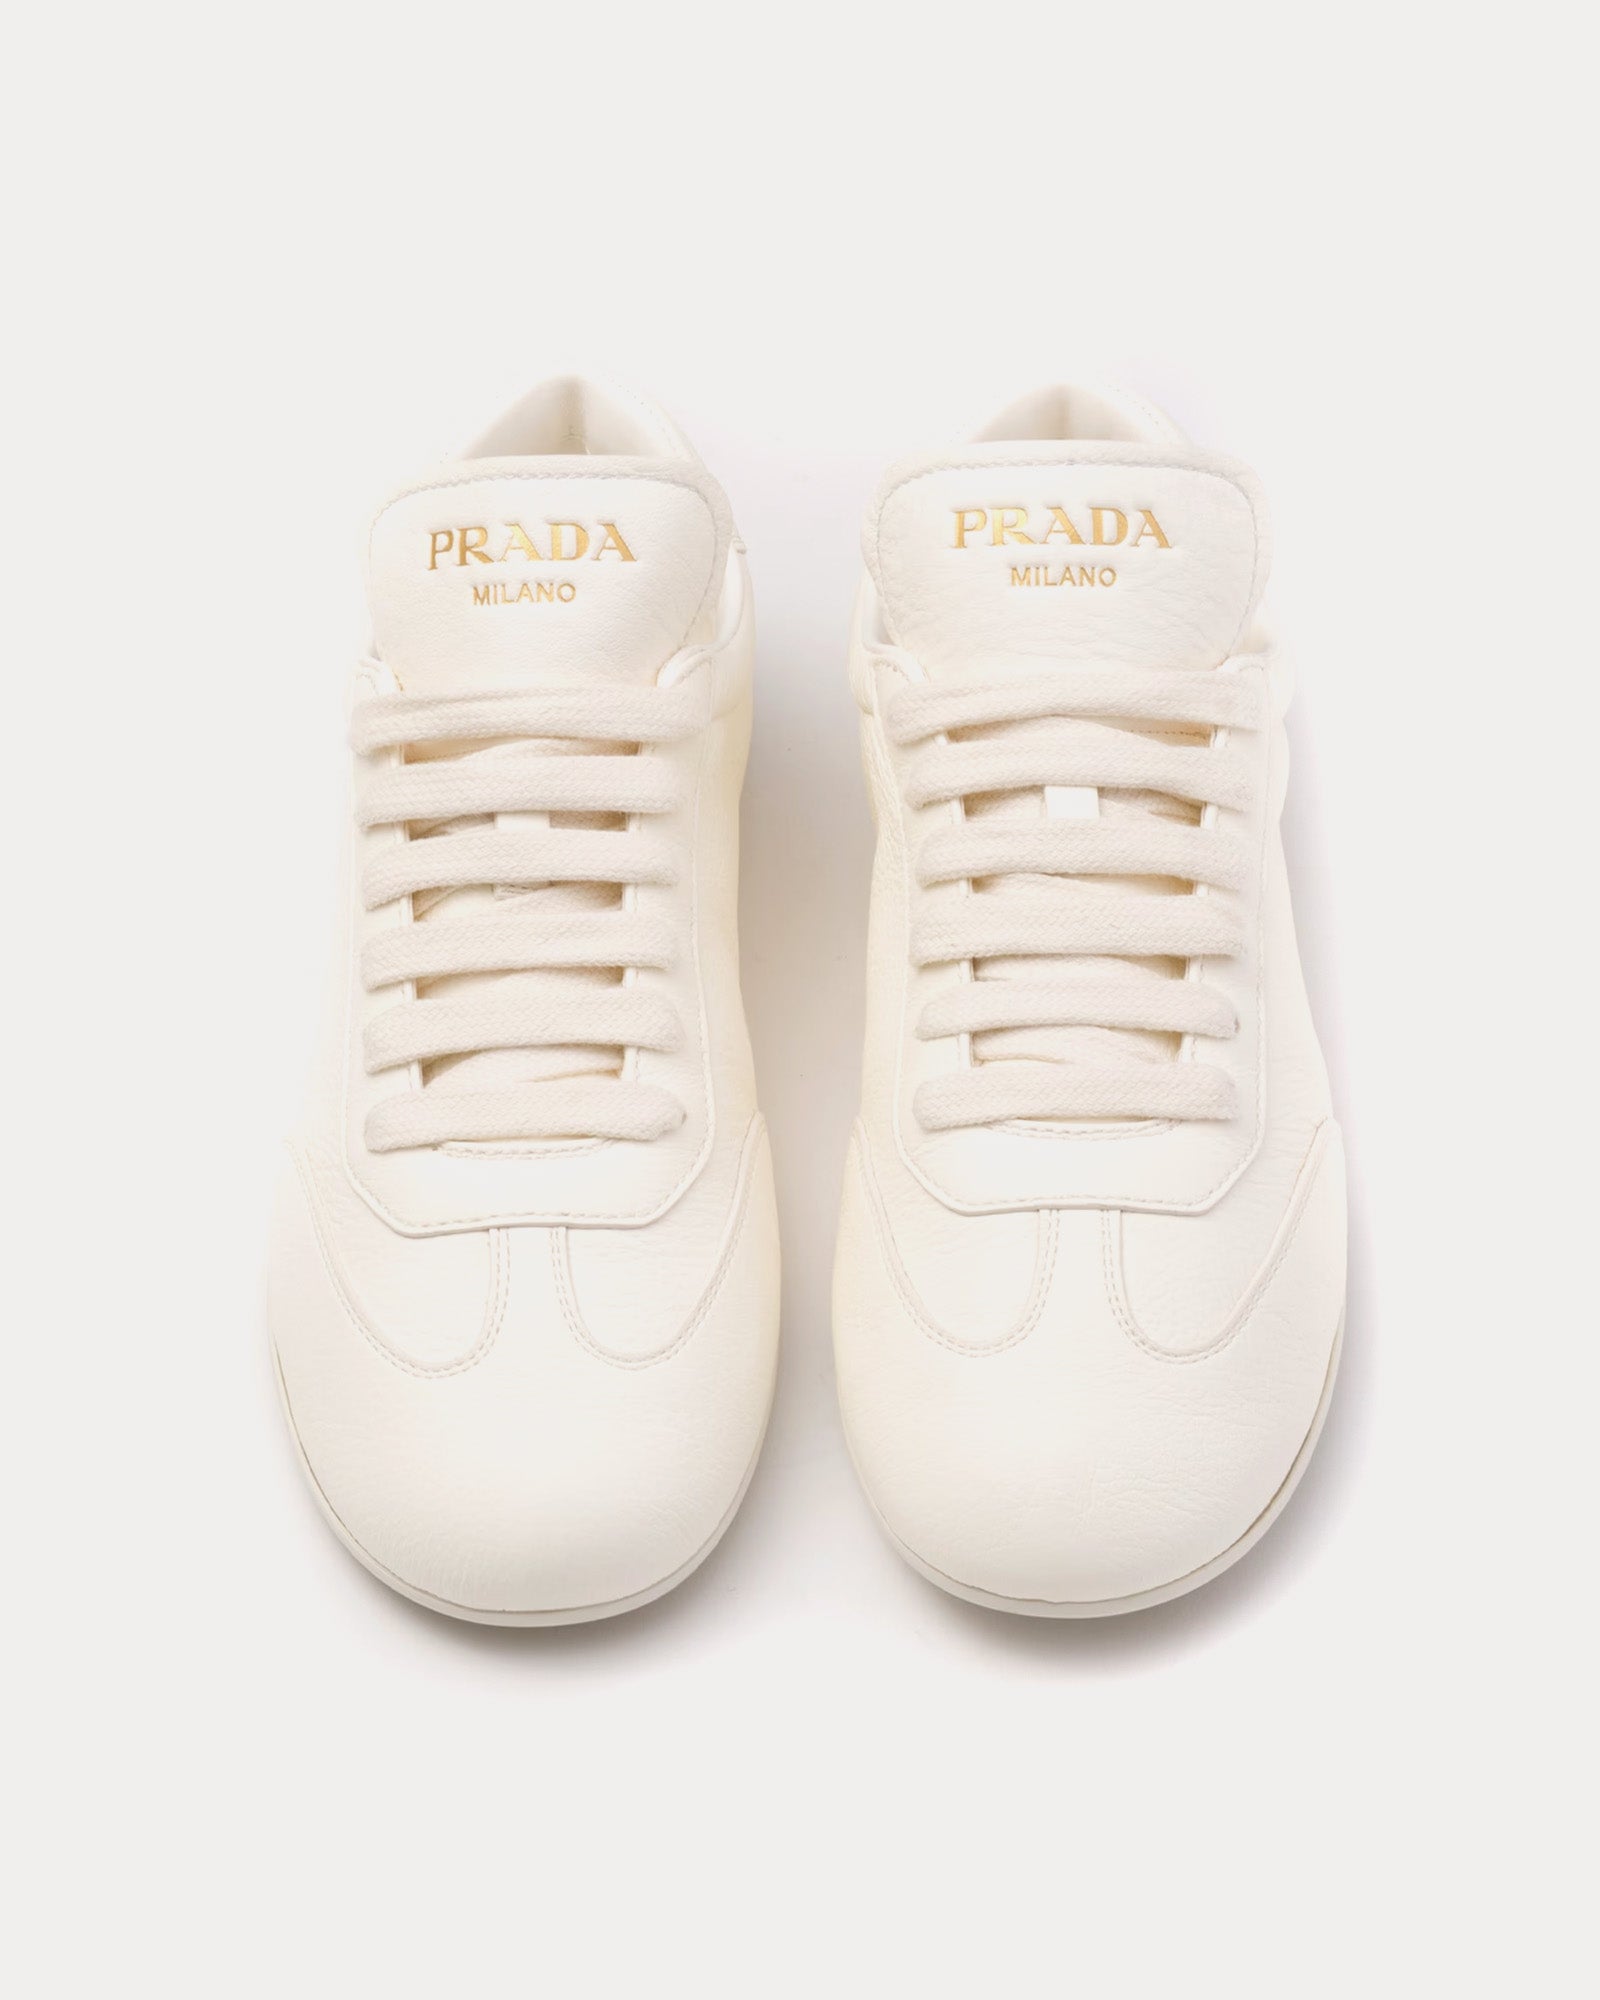 Prada - Deer Leather Ivory Low Top Sneakers